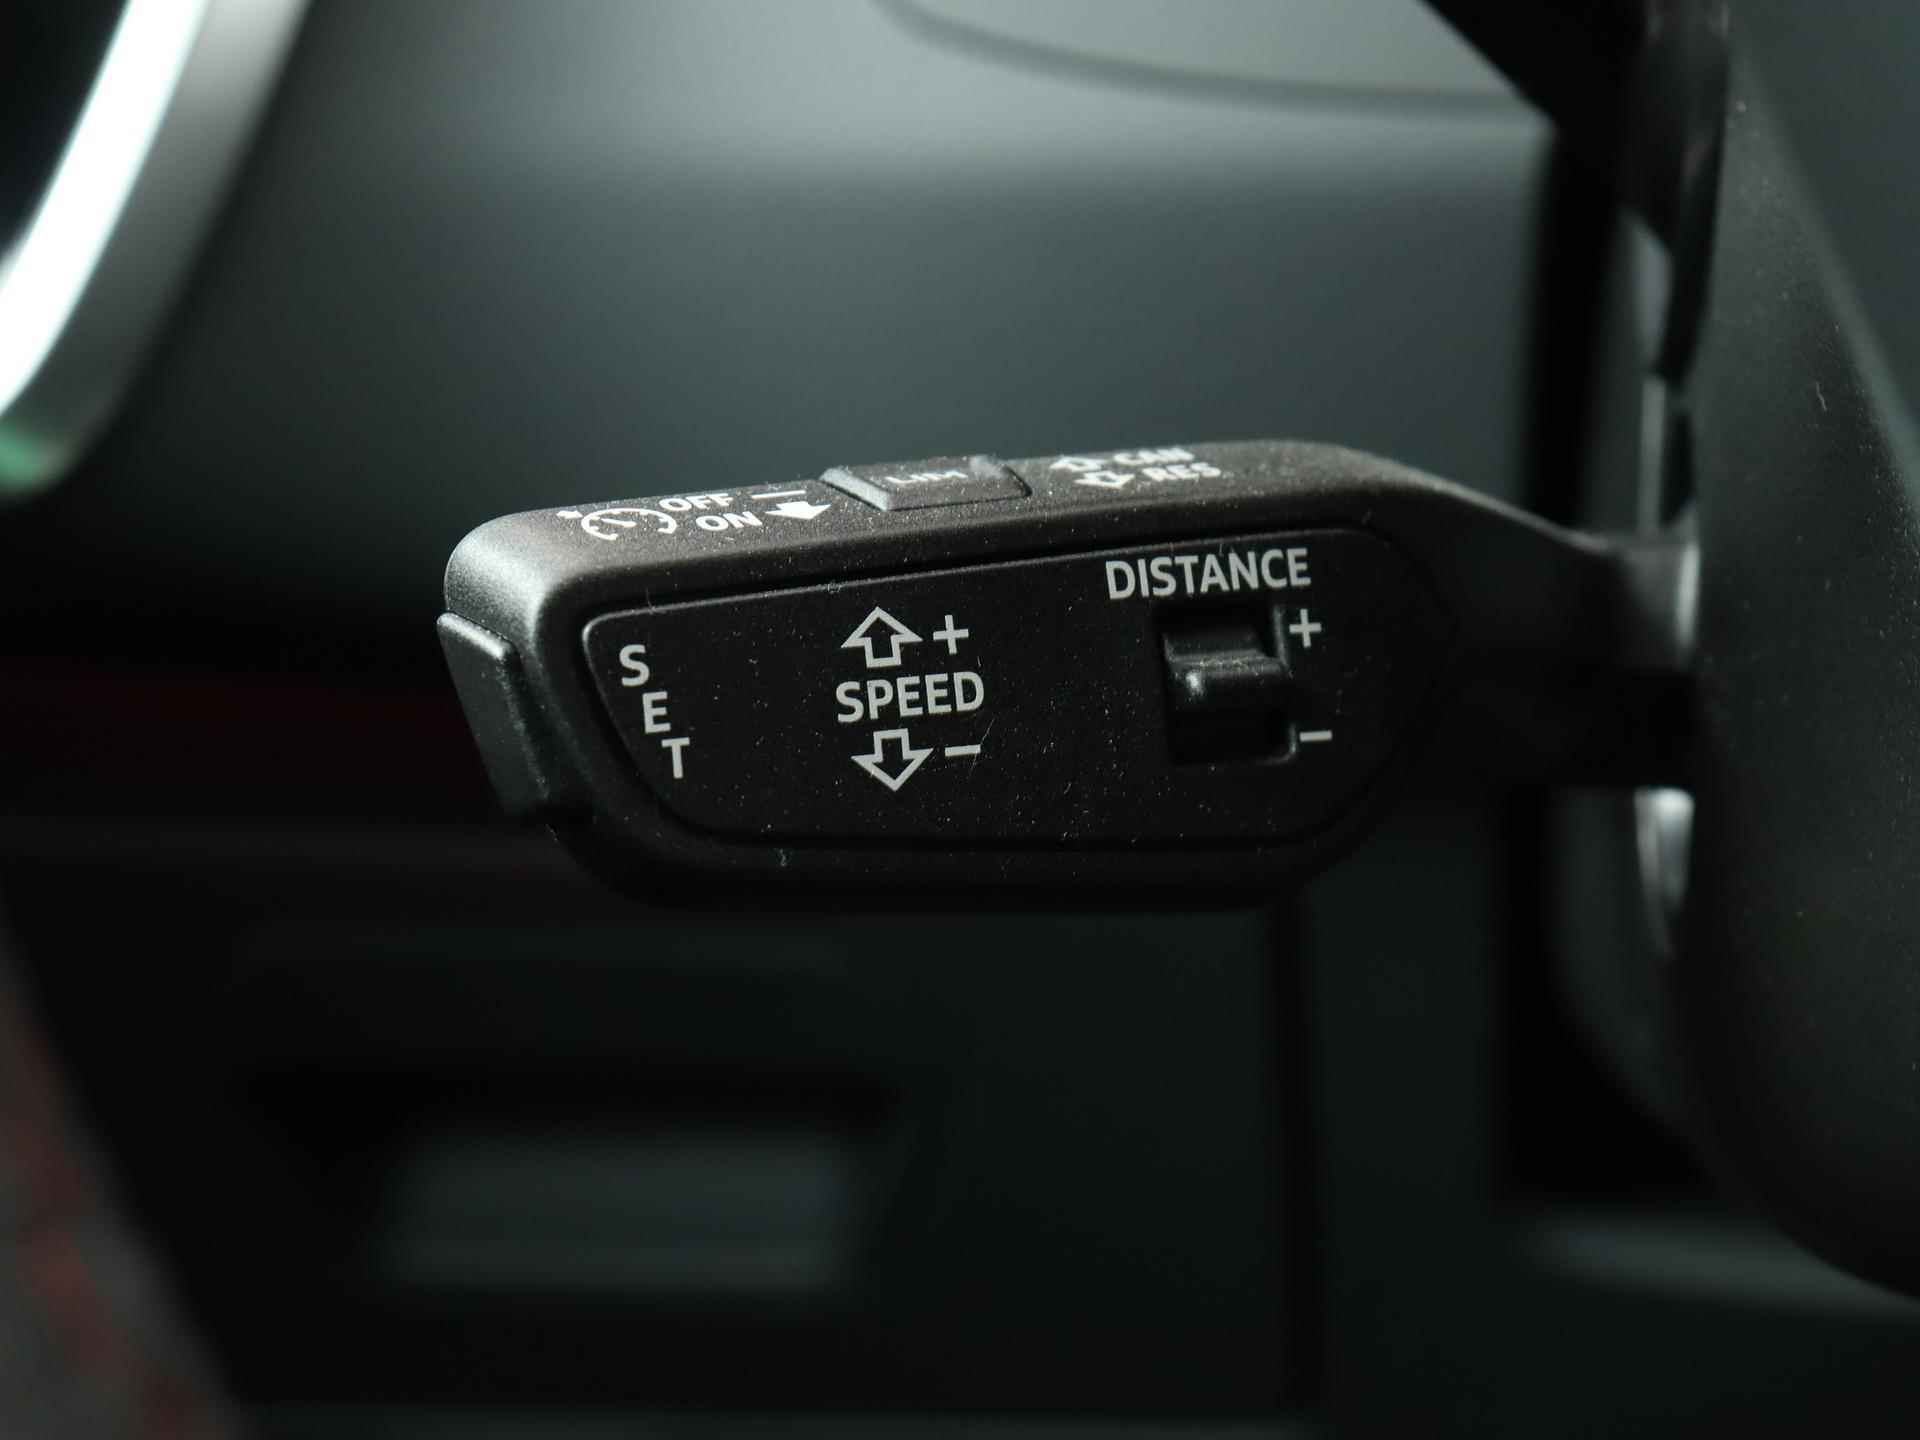 Audi RS6 TFSI quattro 600 PK | Head-up display | Bang & Olufsen Soundsystem | 22 inch lm velgen | RS Dynamic Pakket Plus | RS Design pakket Rood |Optiekpakket Zwart Plus | Panorama dak | RS Sportuitlaat | Keramische remschijven Rood | RS Sportonderstel Plus | Servosluiting deuren | Nu € 36.129,- ACTIEKORTING! | DIRECT LEVERBAAR! | NIEUWE AUTO! | - 16/35